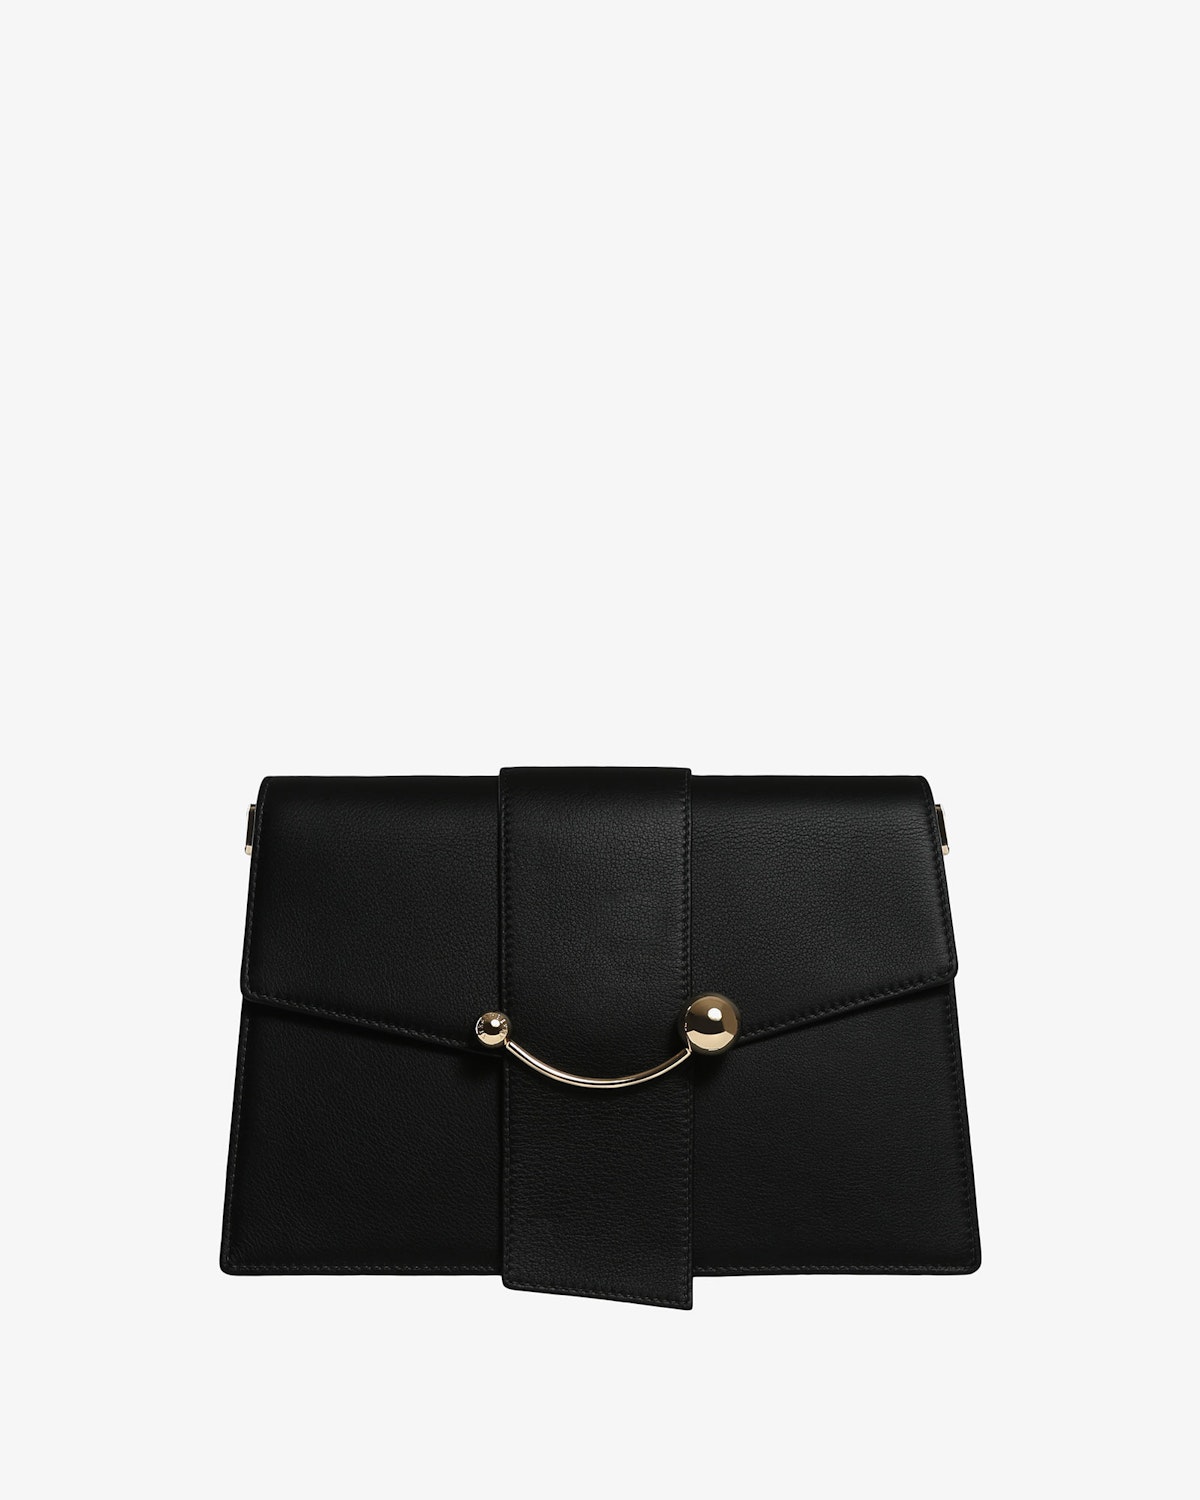 Strathberry - Crescent Shoulder - Leather Shoulder Bag - Black ...